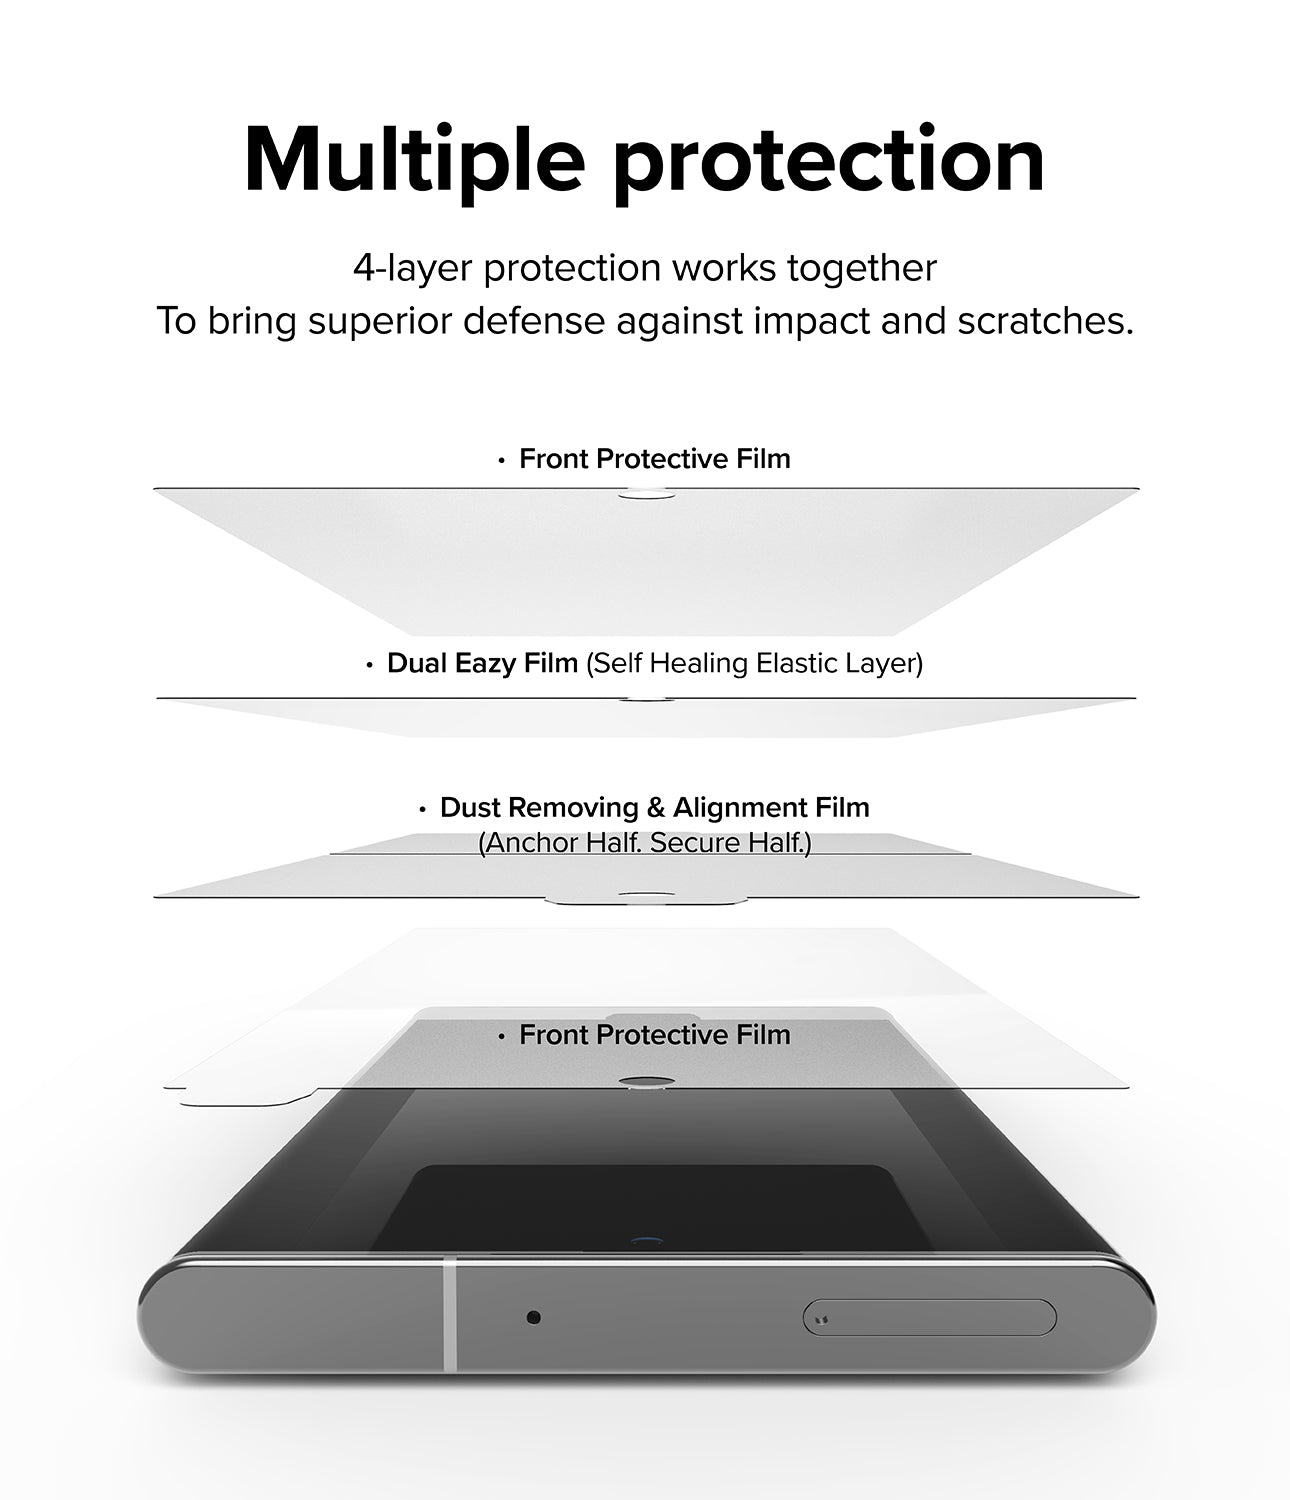 Galaxy S22 Ultra Case Combo | Fusion-X Case + Screen Protector